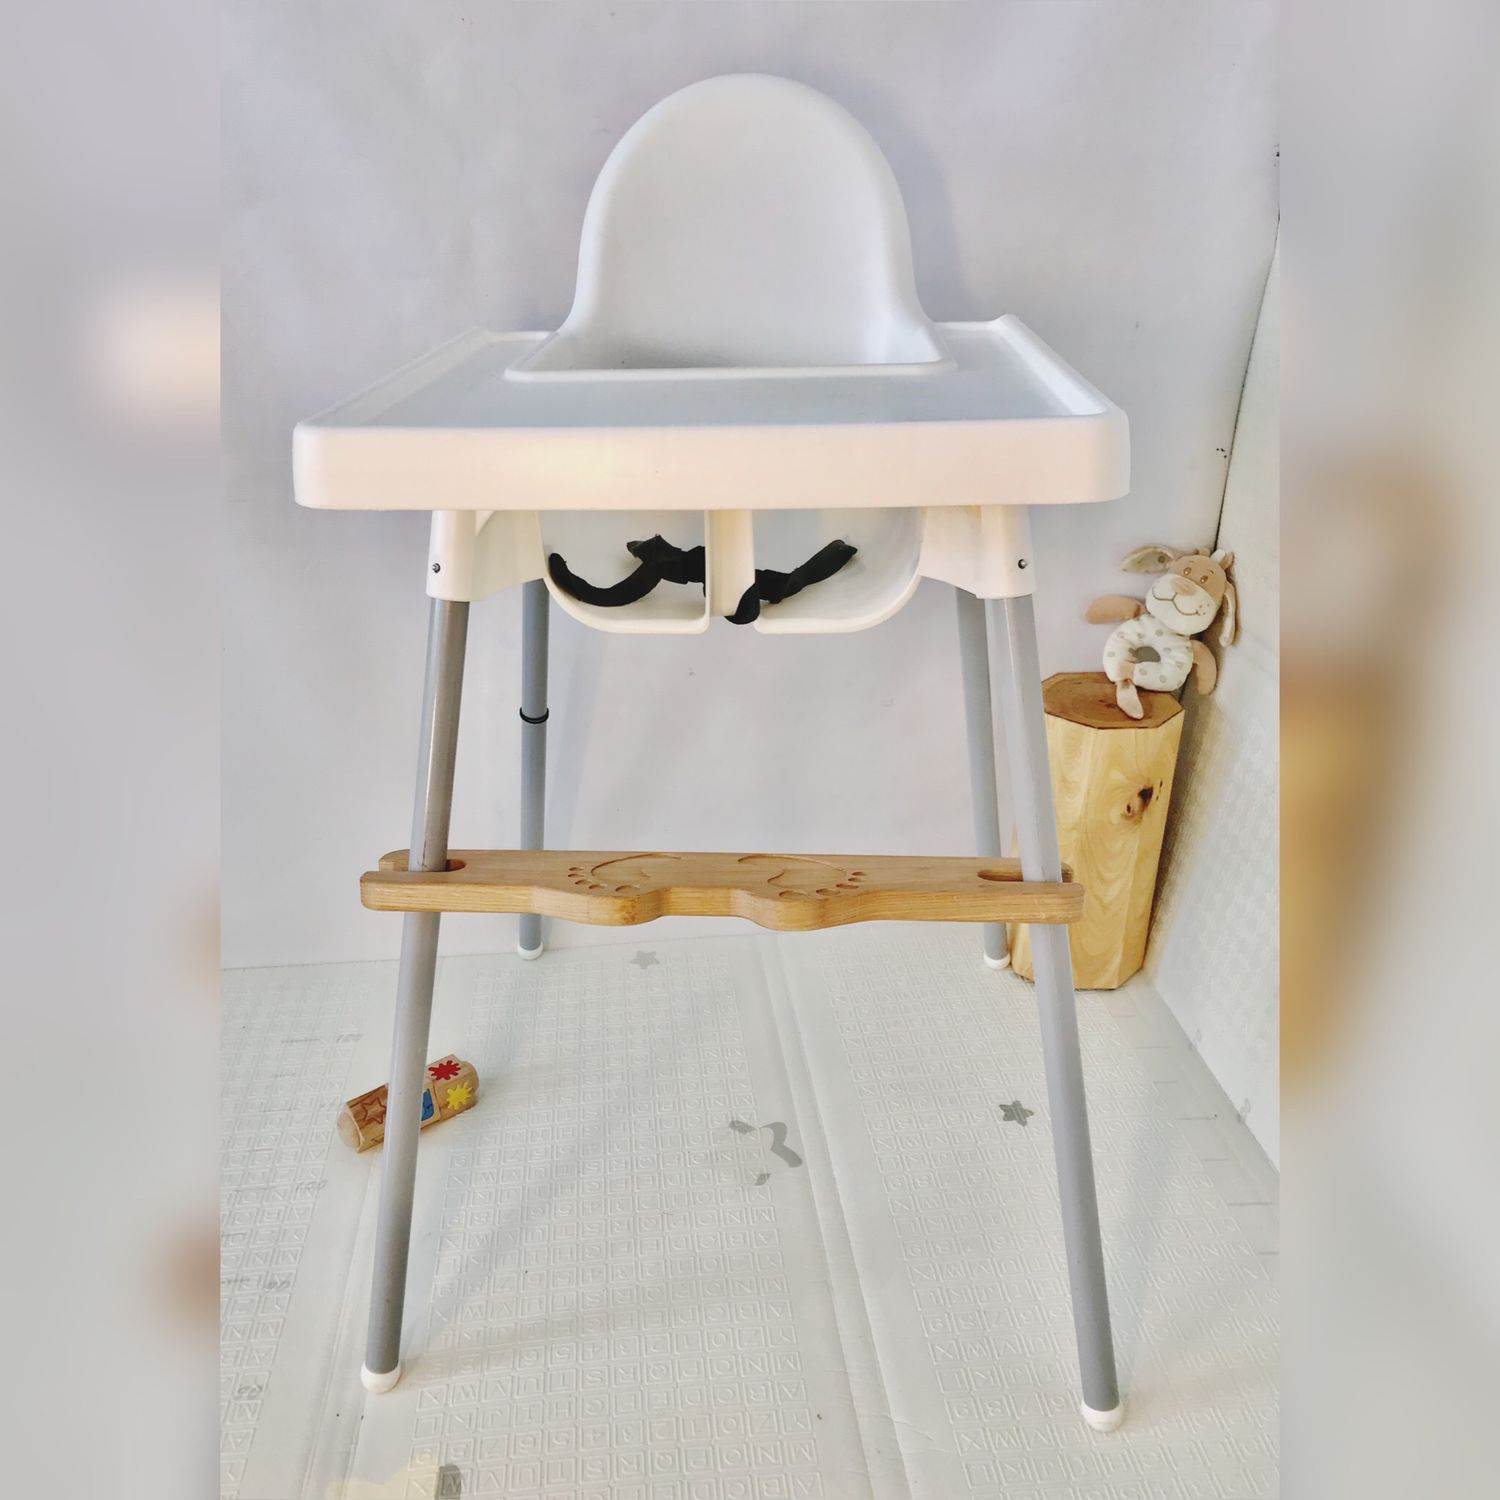 Ремни безопасности для стульчика для кормления икеа